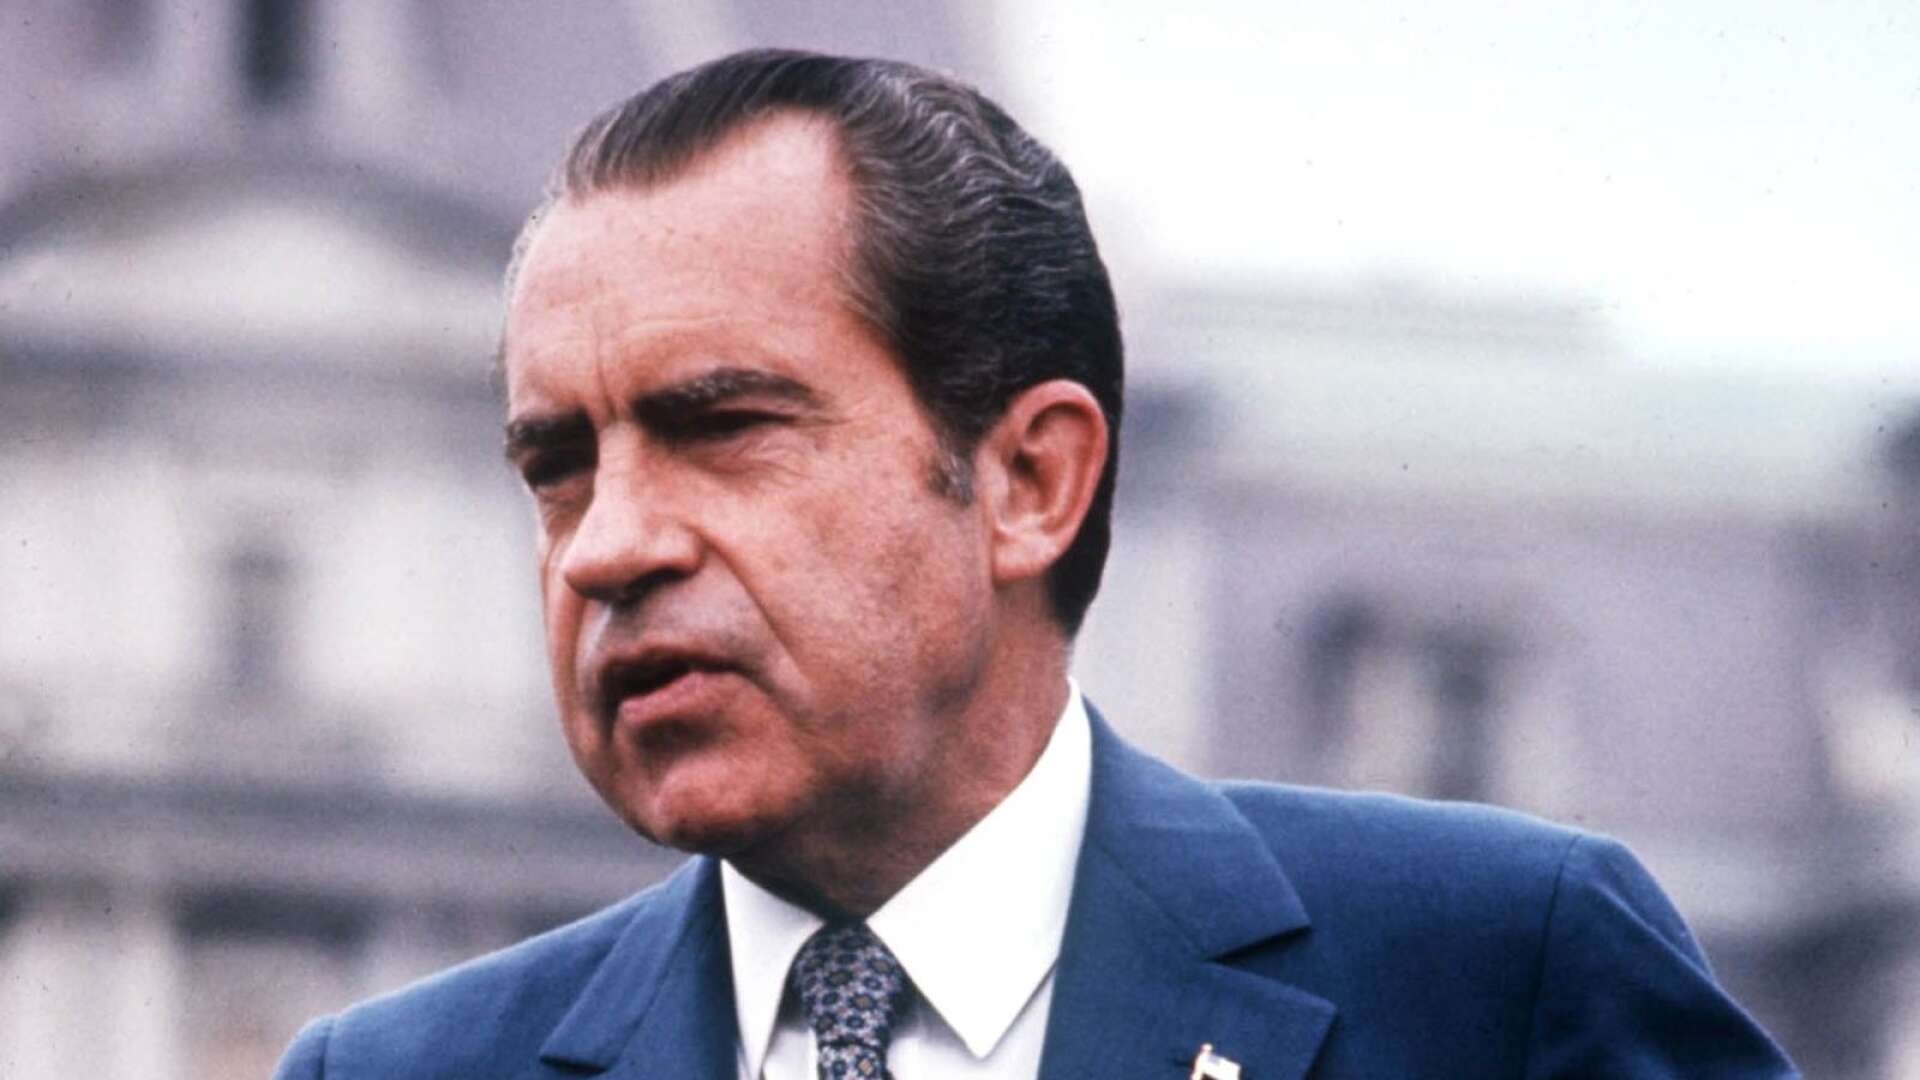 [Nixon] lät sig aldrig dras med i ideologiska trender och vägrade att förlita sig på abstrakta förklaringar för varför inget ont kan hända igen, skriver Alex Vårstrand.